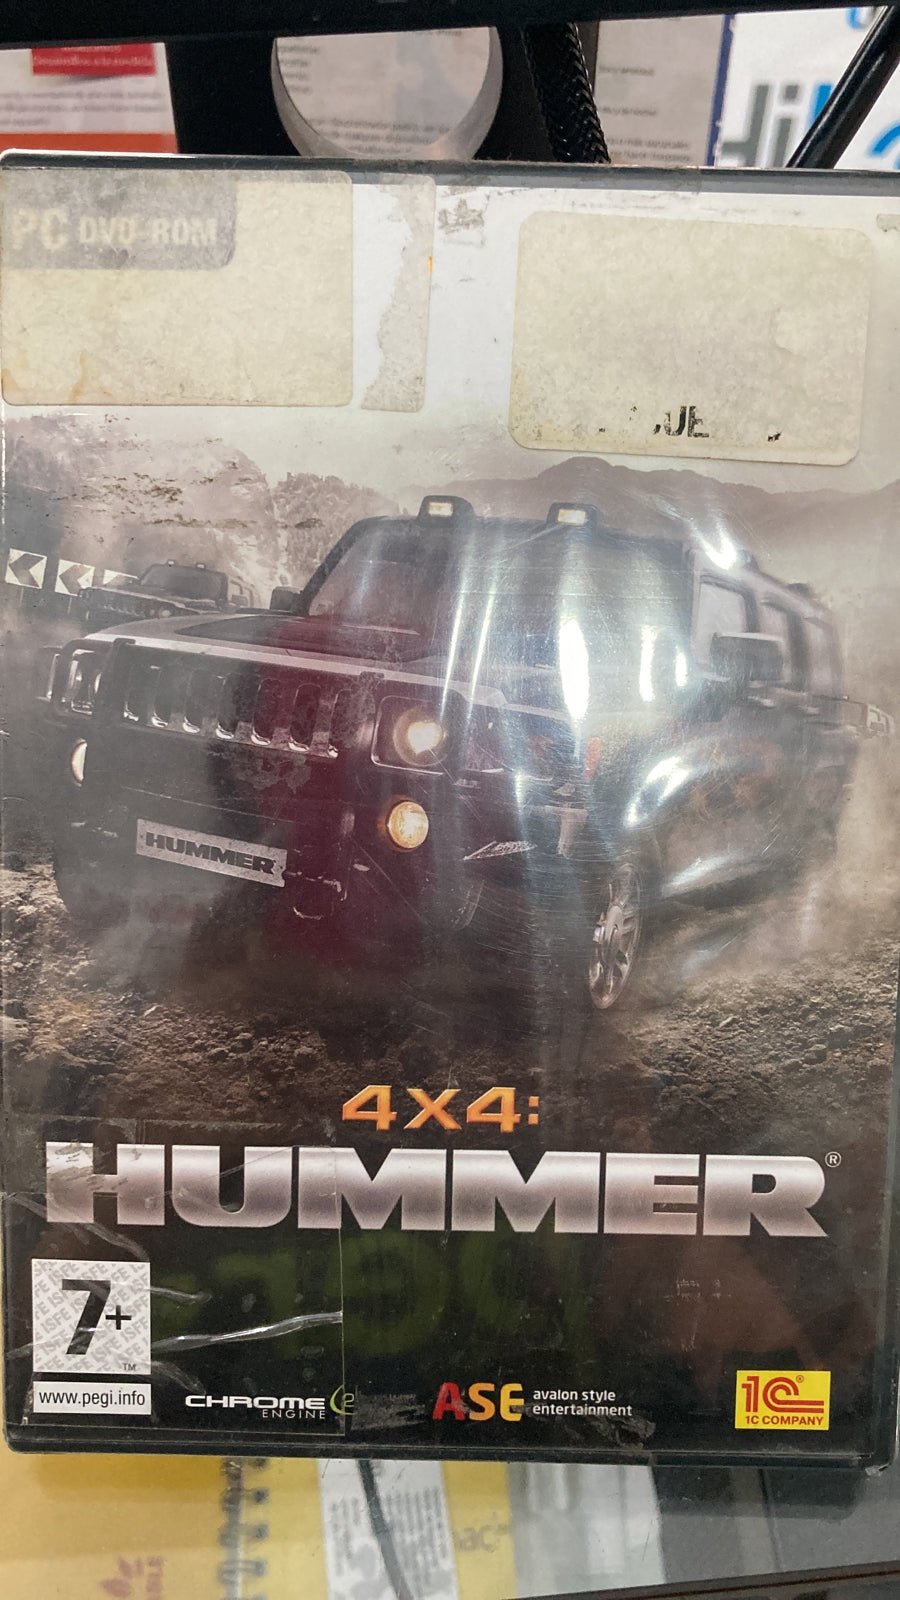 PC 4X4 HUMMER - NOORHS Latinoamérica, S.A. de C.V.